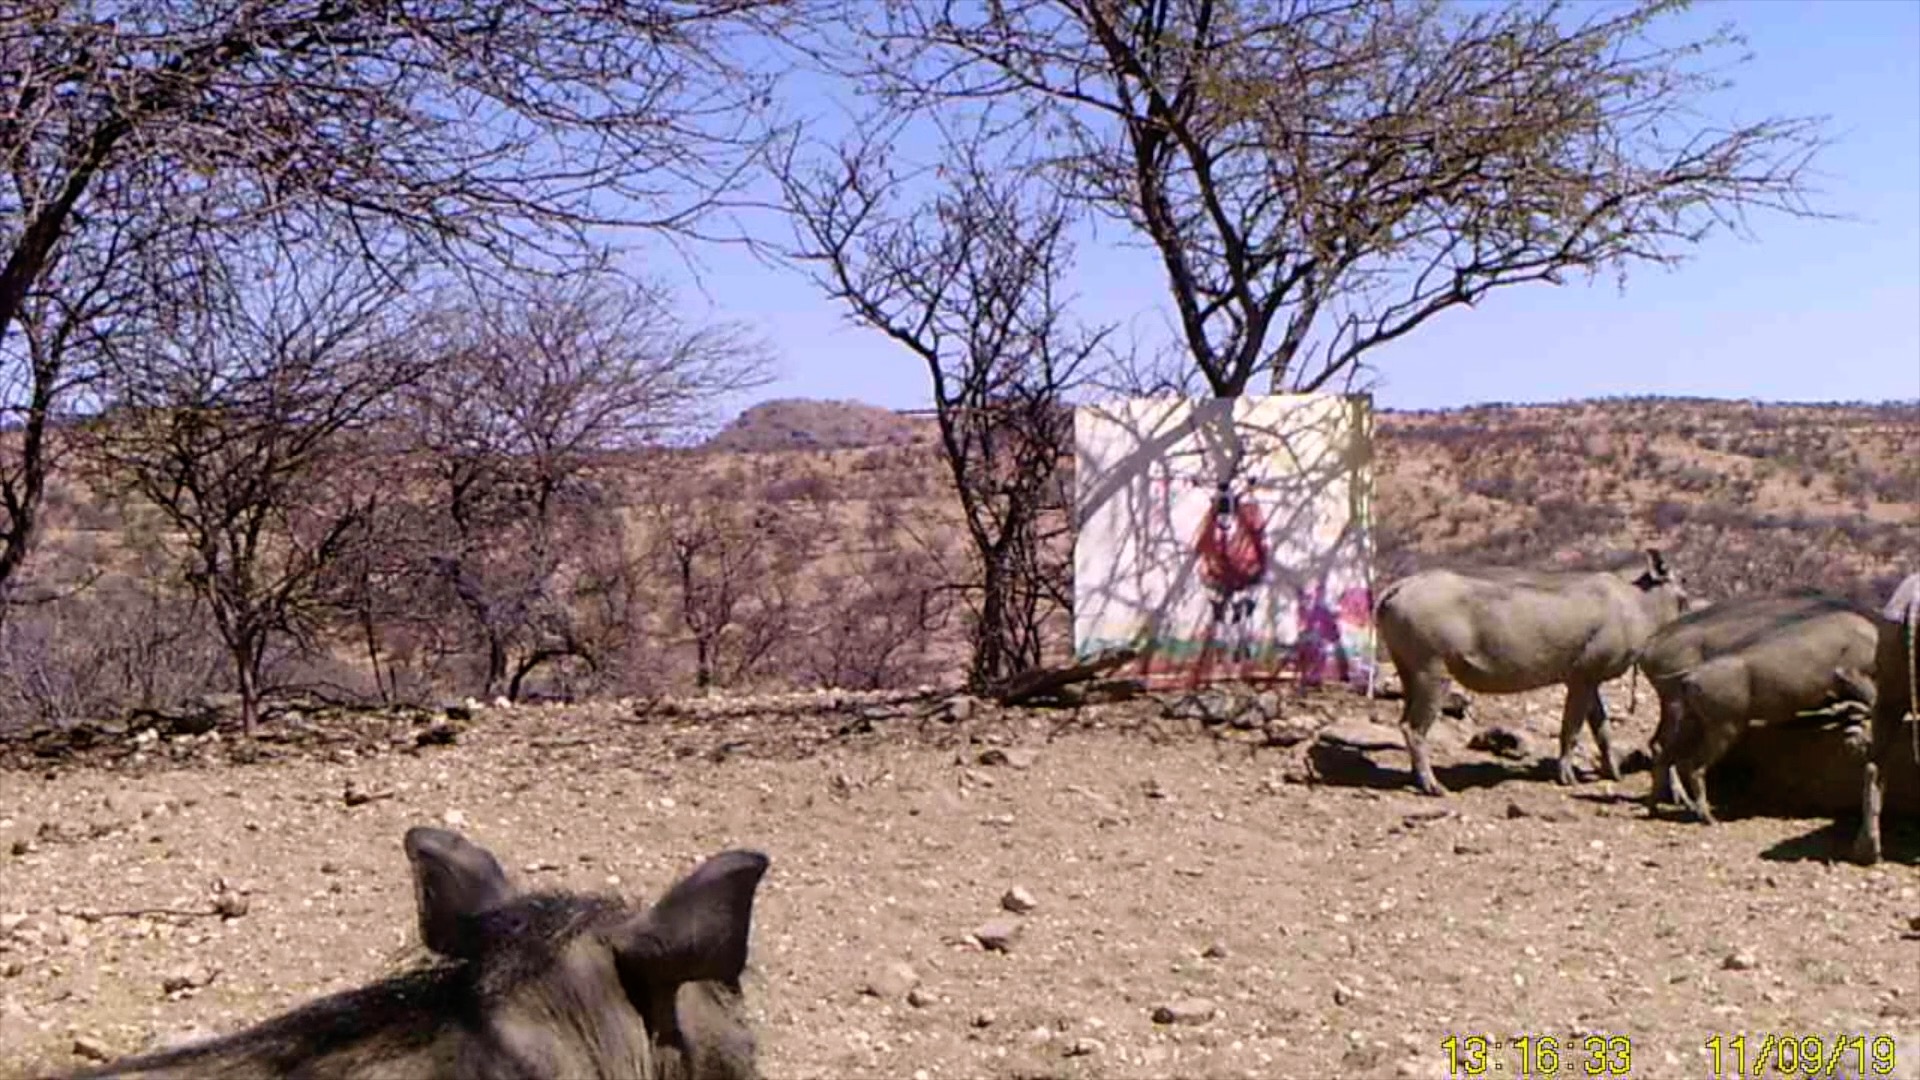 Filmstill SUPERWILDVISION Namibia 2019, Afrika, Kunstprojekt von Irene Mueller, Warzenschweine mit Gemaelde